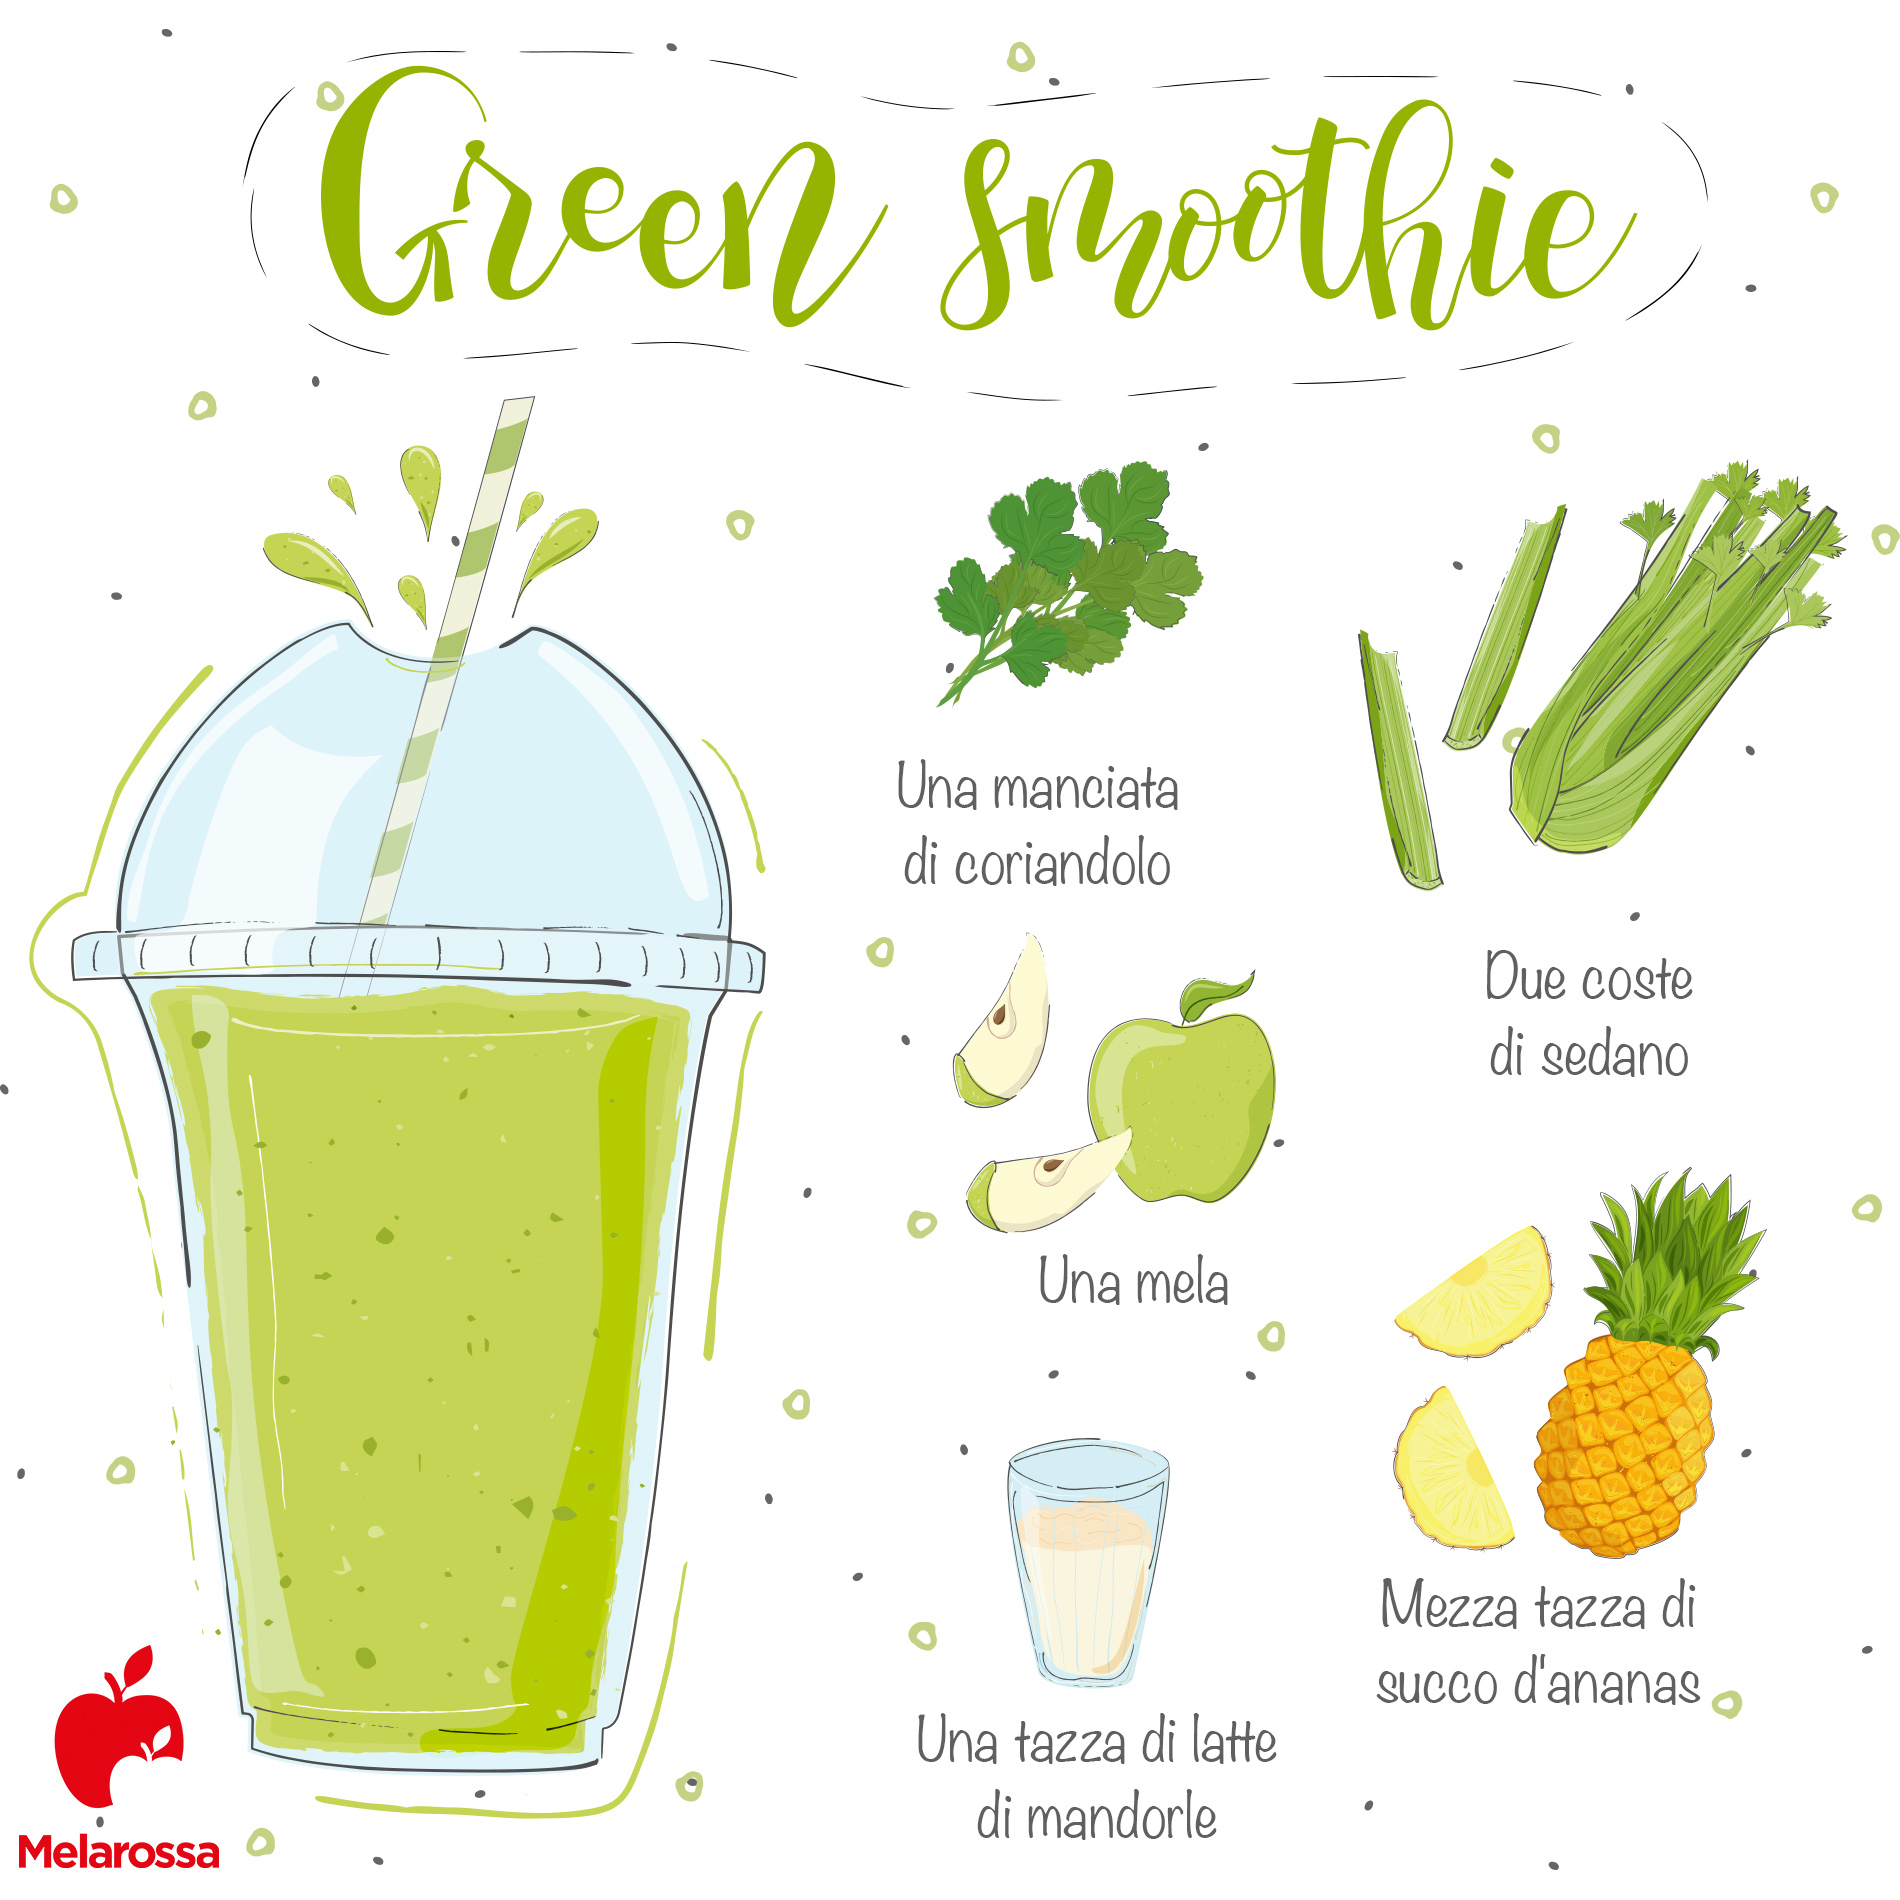 cetriolo: green smoothie 